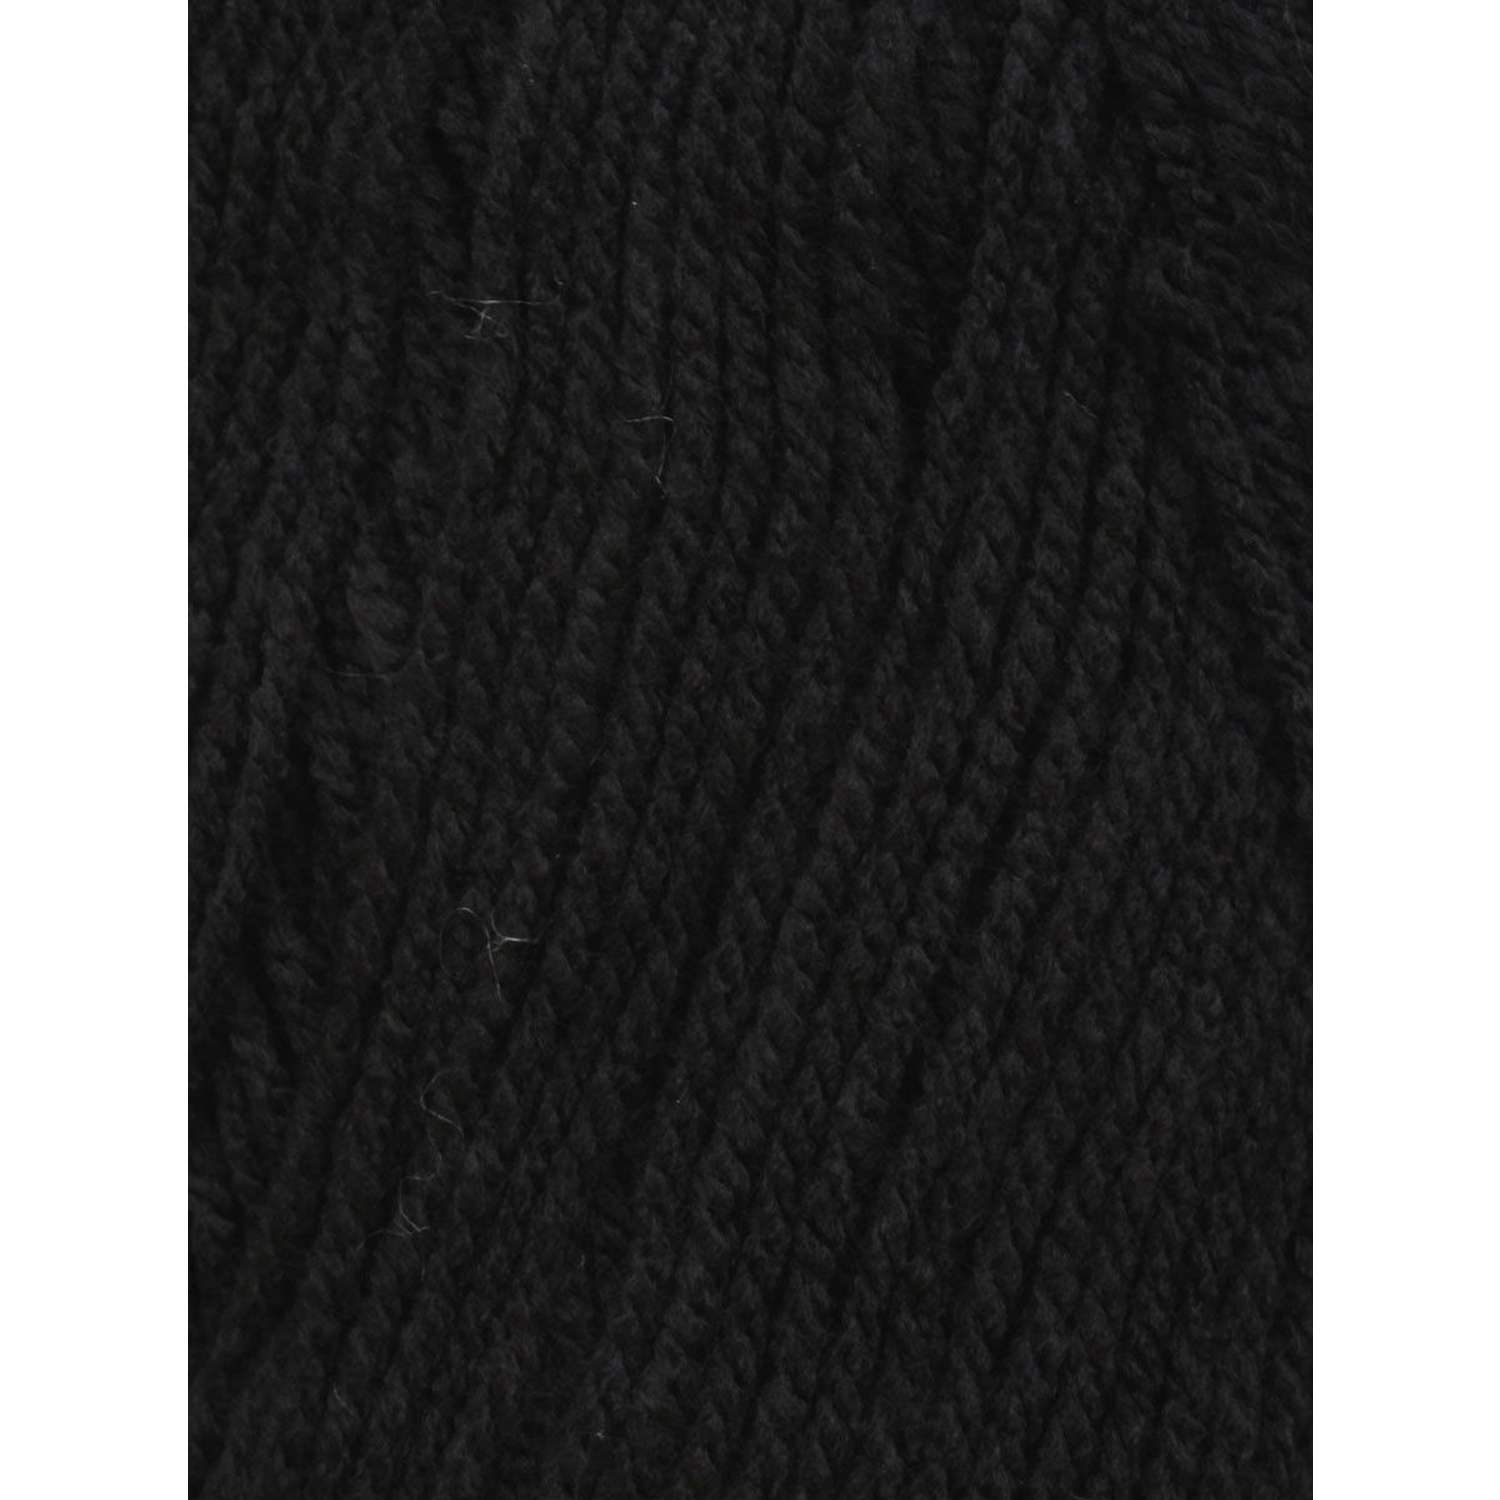 Пряжа Astra Premium Галатея акриловая 100 г 250 м 02 черный 3 мотка - фото 3